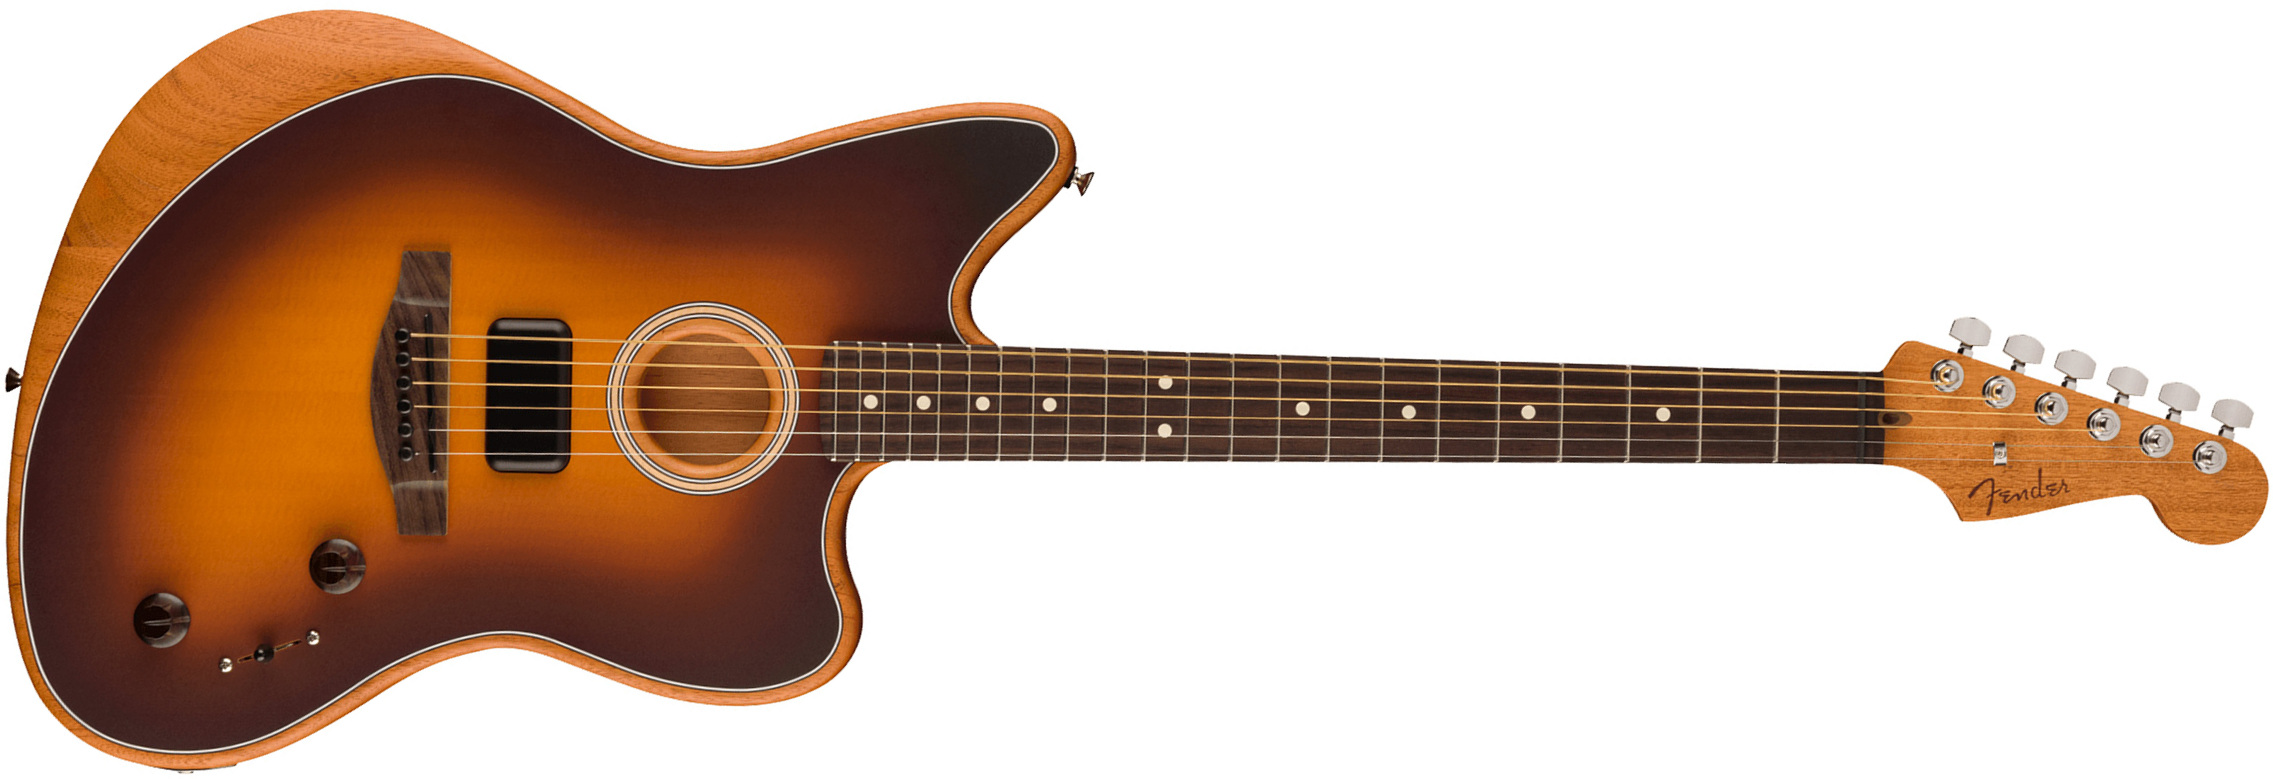 Fender Jazzmaster Acoustasonic Player Mex Epicea Acajou Rw - 2-color Sunburst - Guitare Electro Acoustique - Main picture